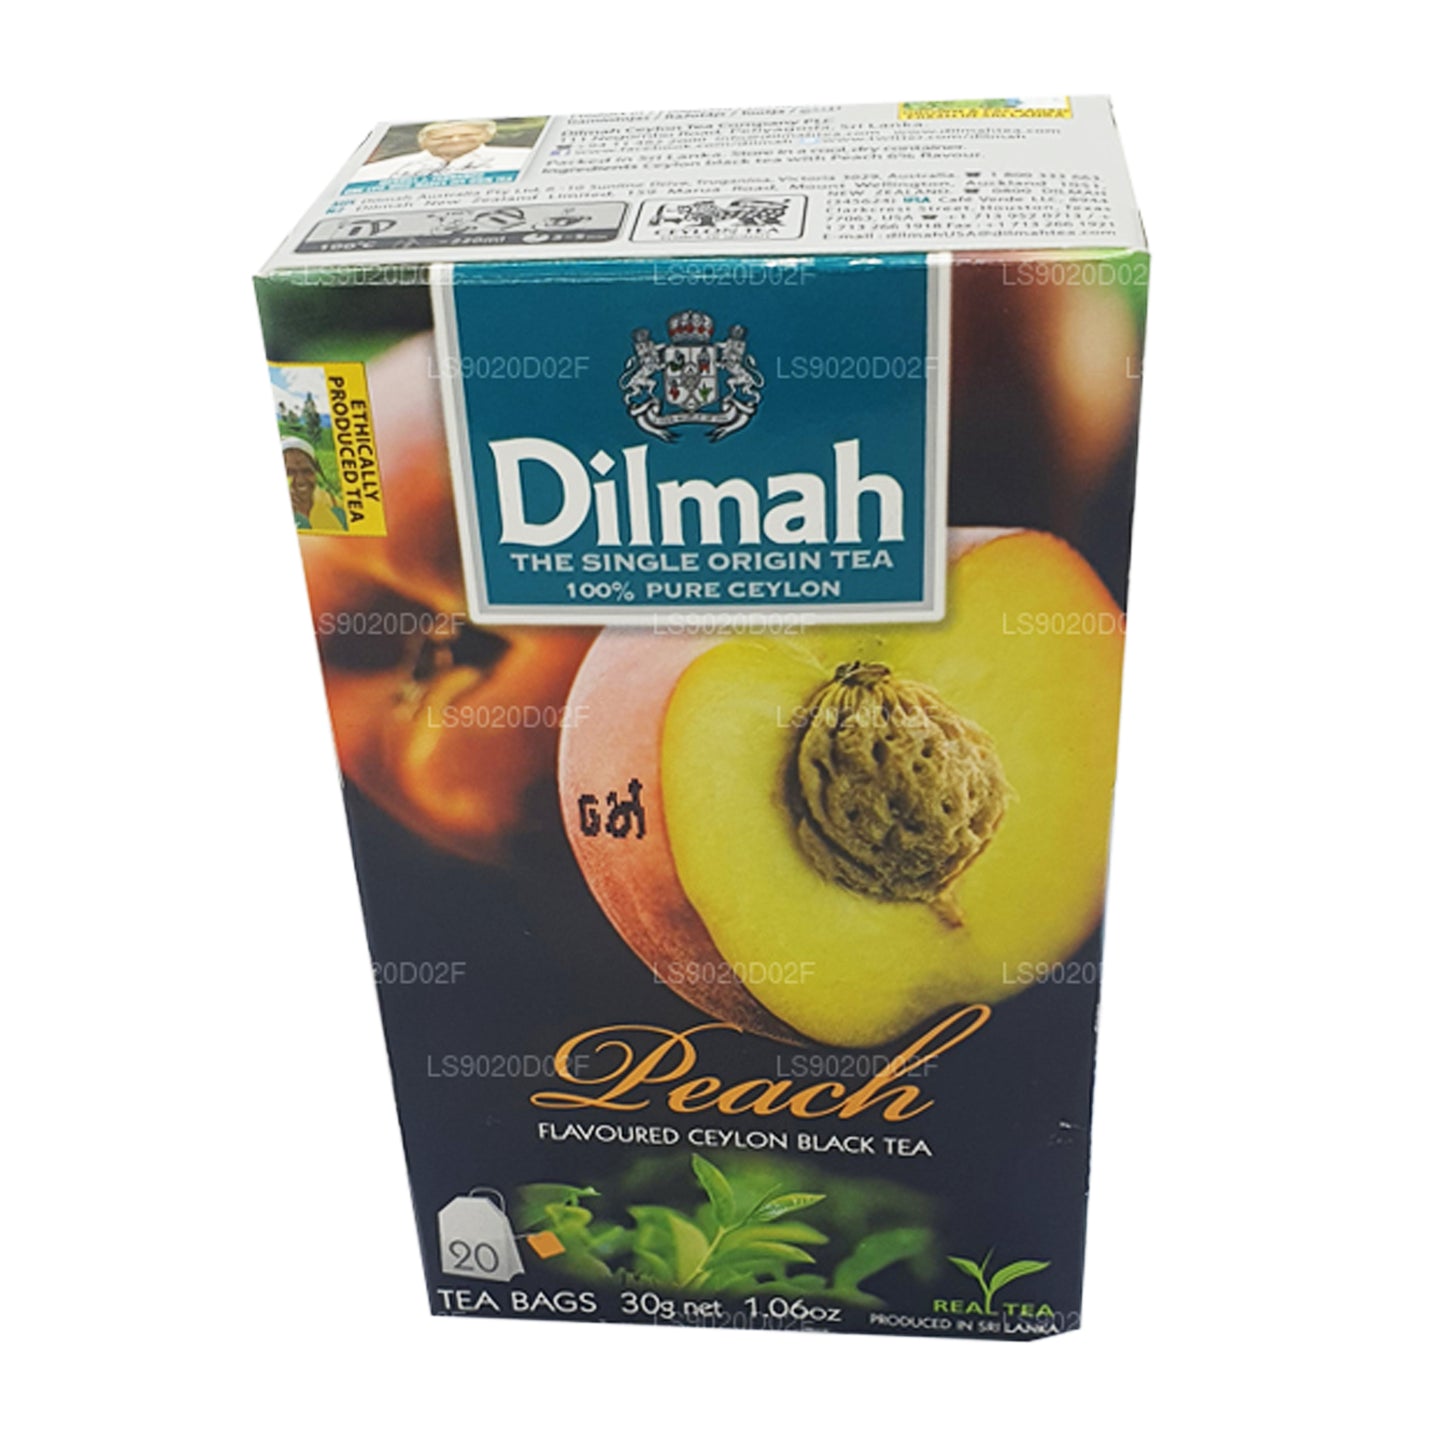 Dilmah Peach Flavored Ceylon Black Tea (30g) 20 Tea Bags